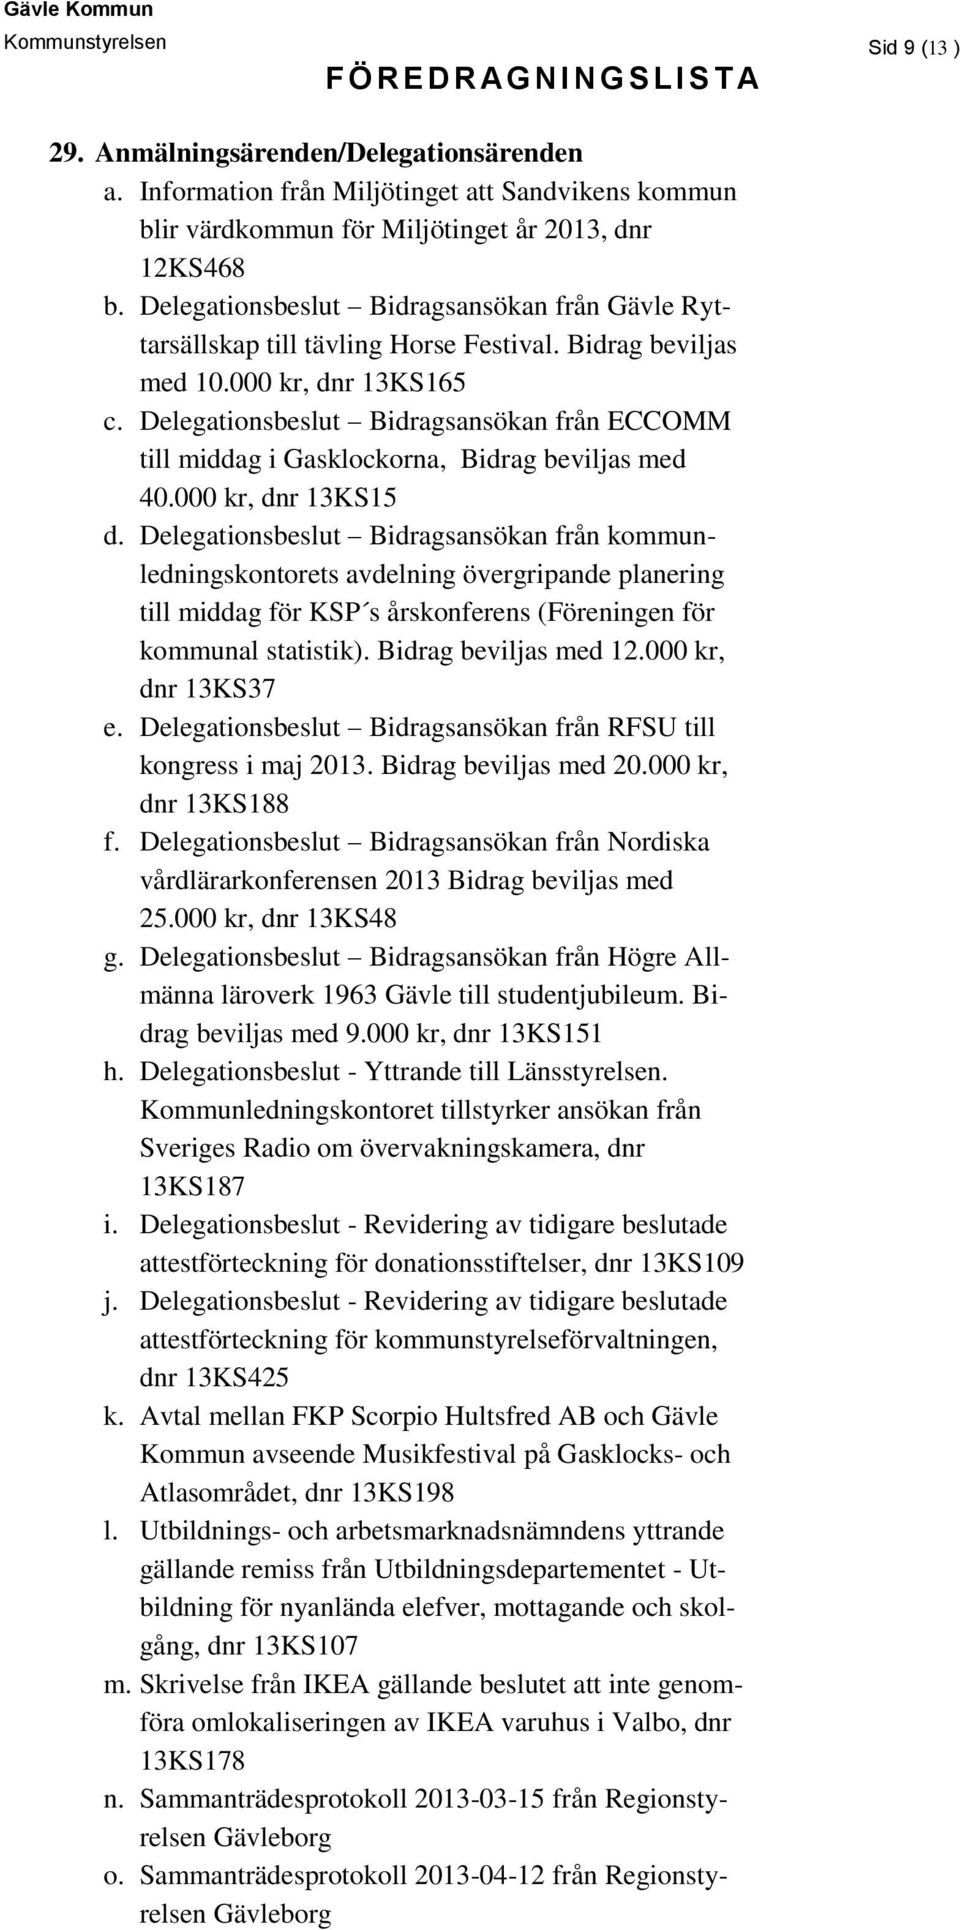 Delegationsbeslut Bidragsansökan från ECCOMM till middag i Gasklockorna, Bidrag beviljas med 40.000 kr, dnr 13KS15 d.